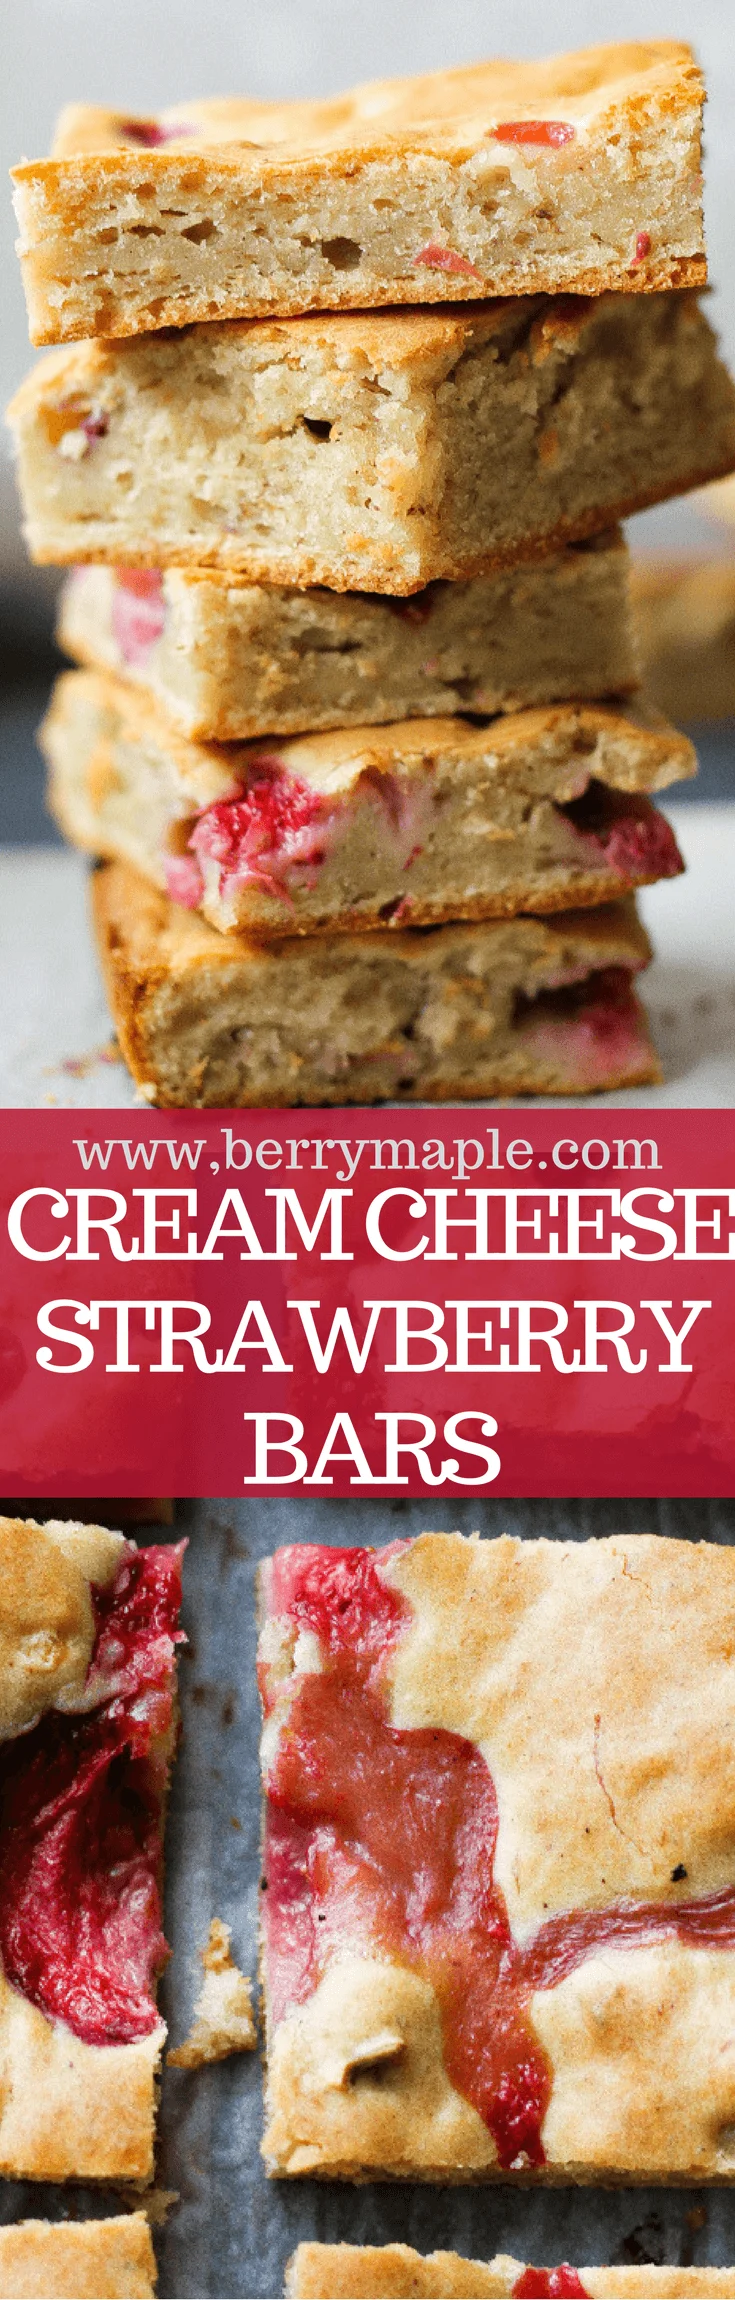 cream cheese strawberry bars recipe www.berrymaple.com #creamcheese#bars#strawberries#dessert#brownsugar